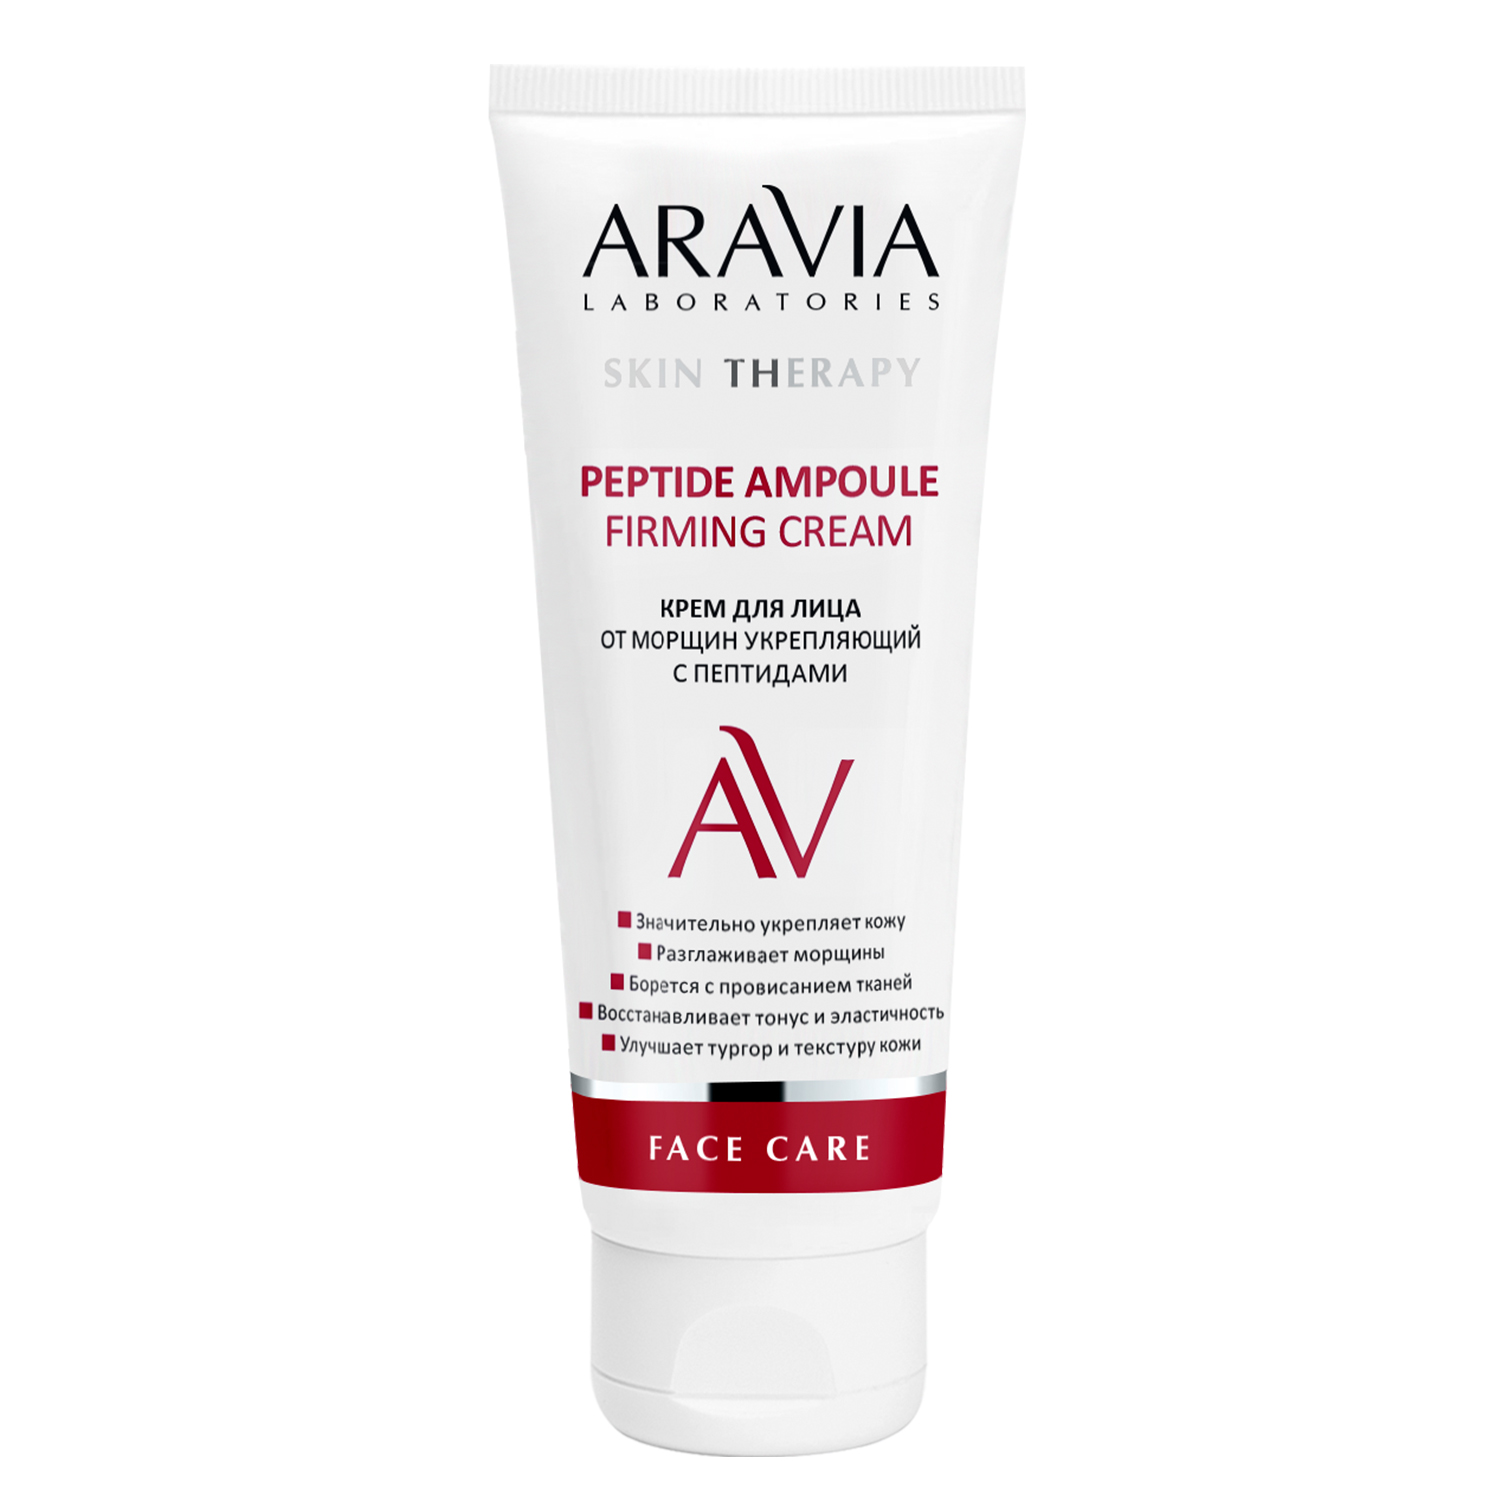 Крем для лица ARAVIA Laboratories от морщин с пептидами Peptide Ampoule Firming Cream 50 мл - фото 2